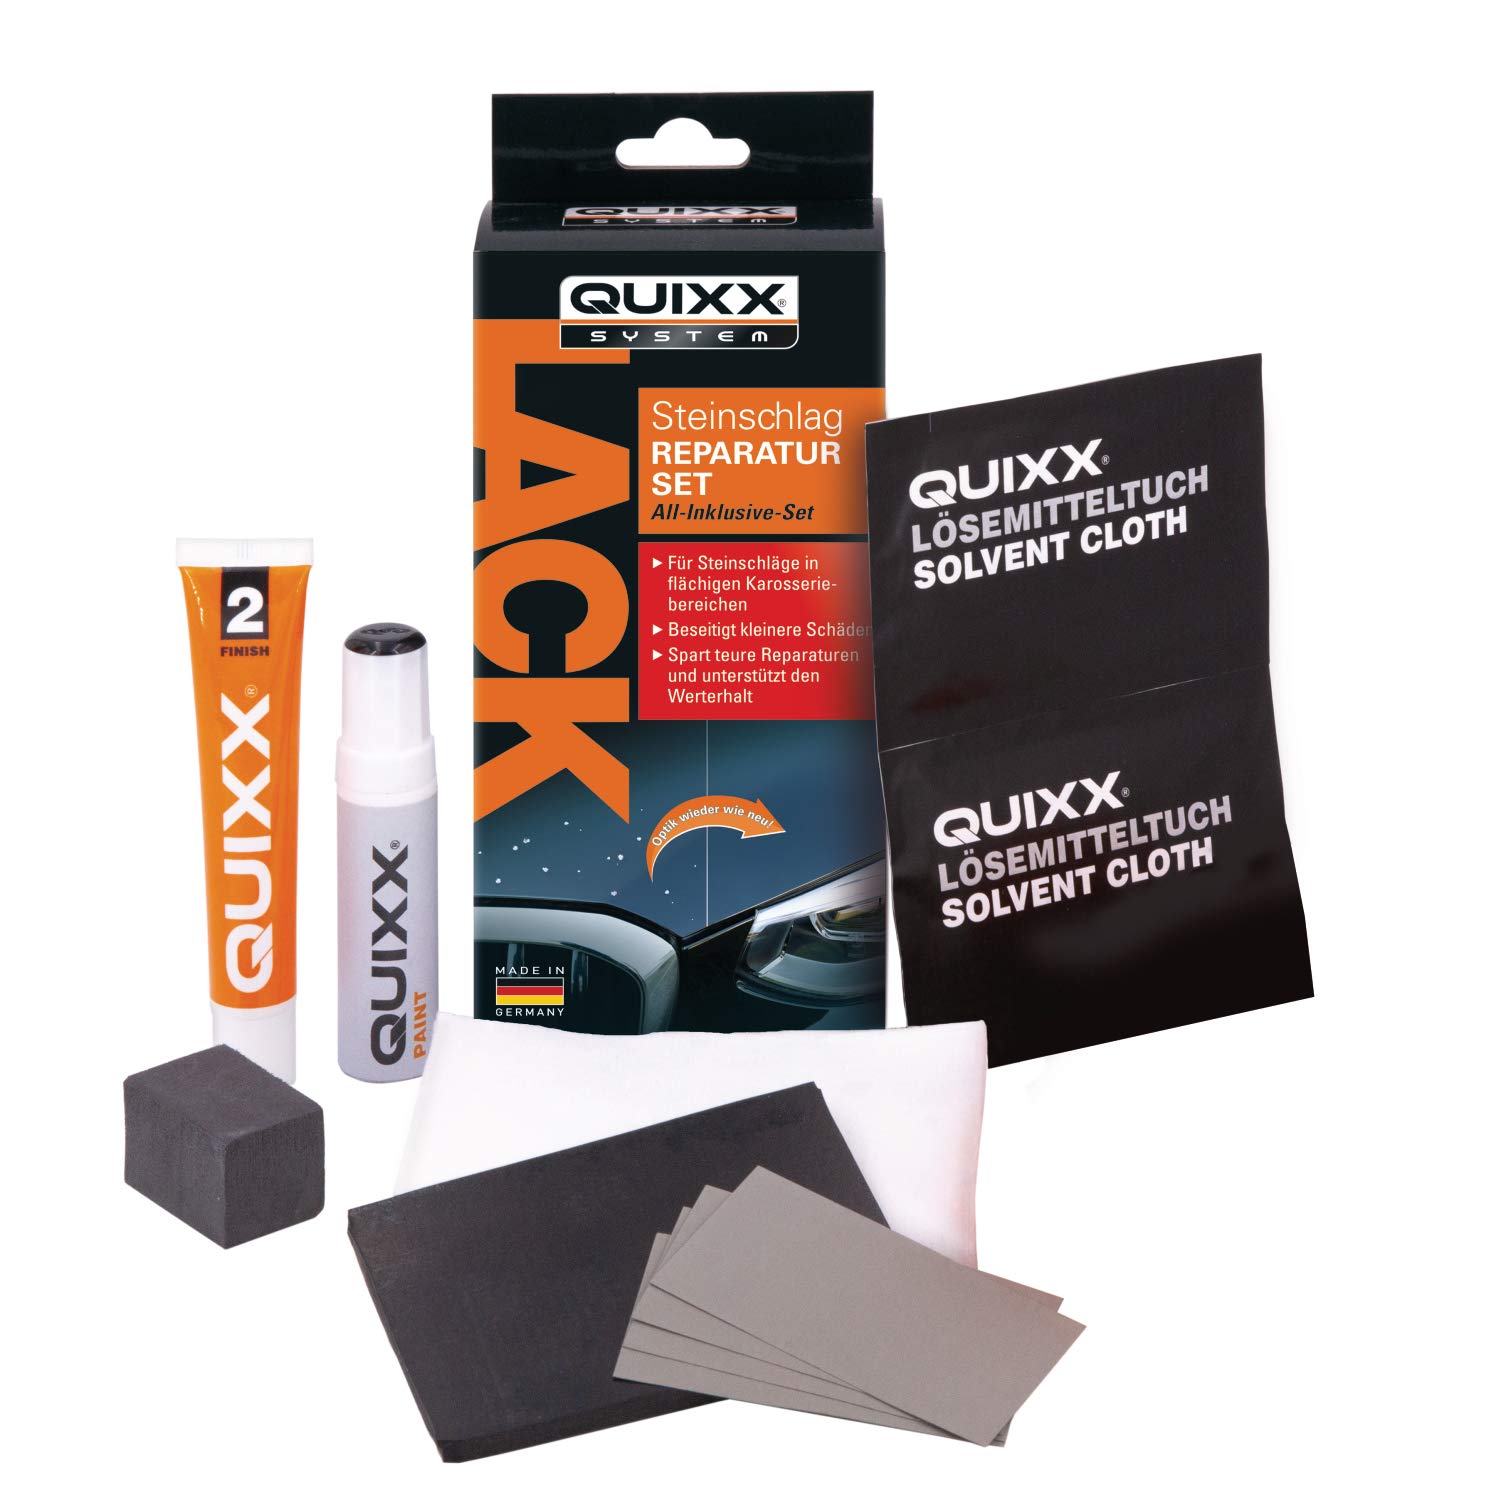 QUIXX Lack Steinschlag Reparatur Set, zur Entfernung von Steinschlägen und Beschädigungen im Lack, All-inclusive-Set, schwarz von Quixx